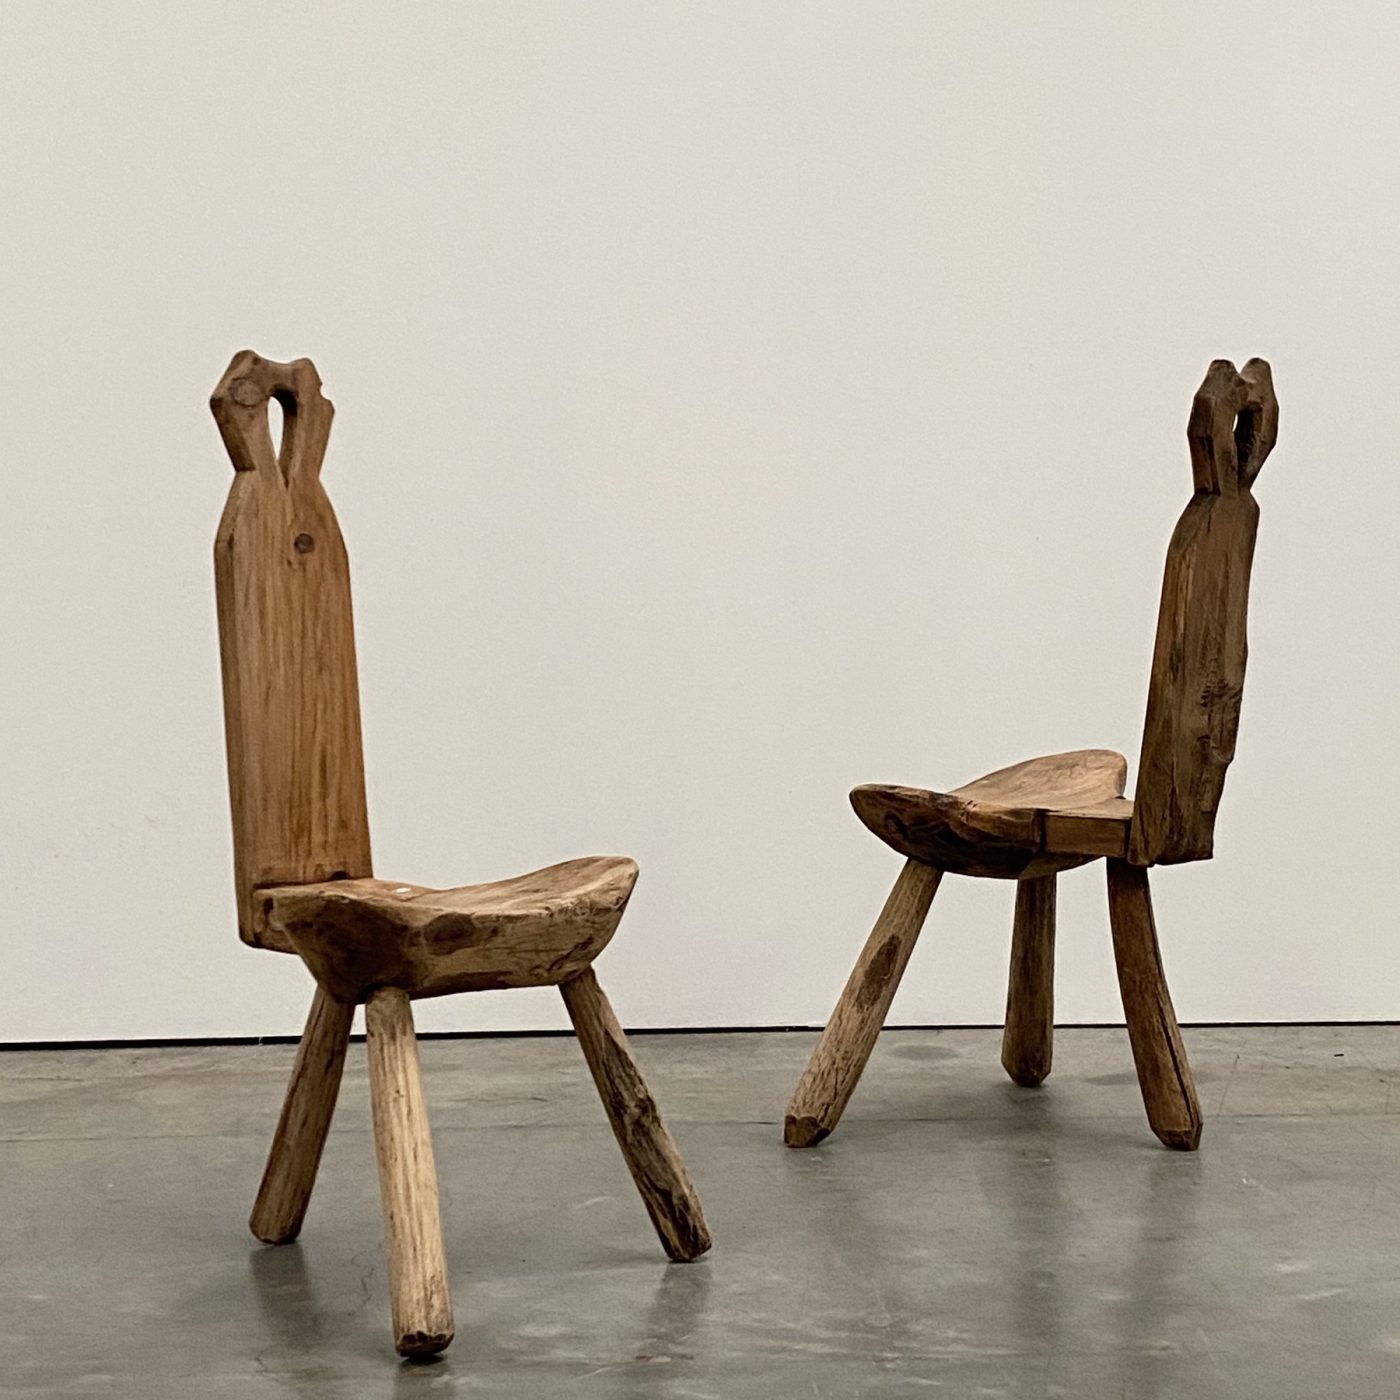 objet-vagabond-primitive-chairs0001